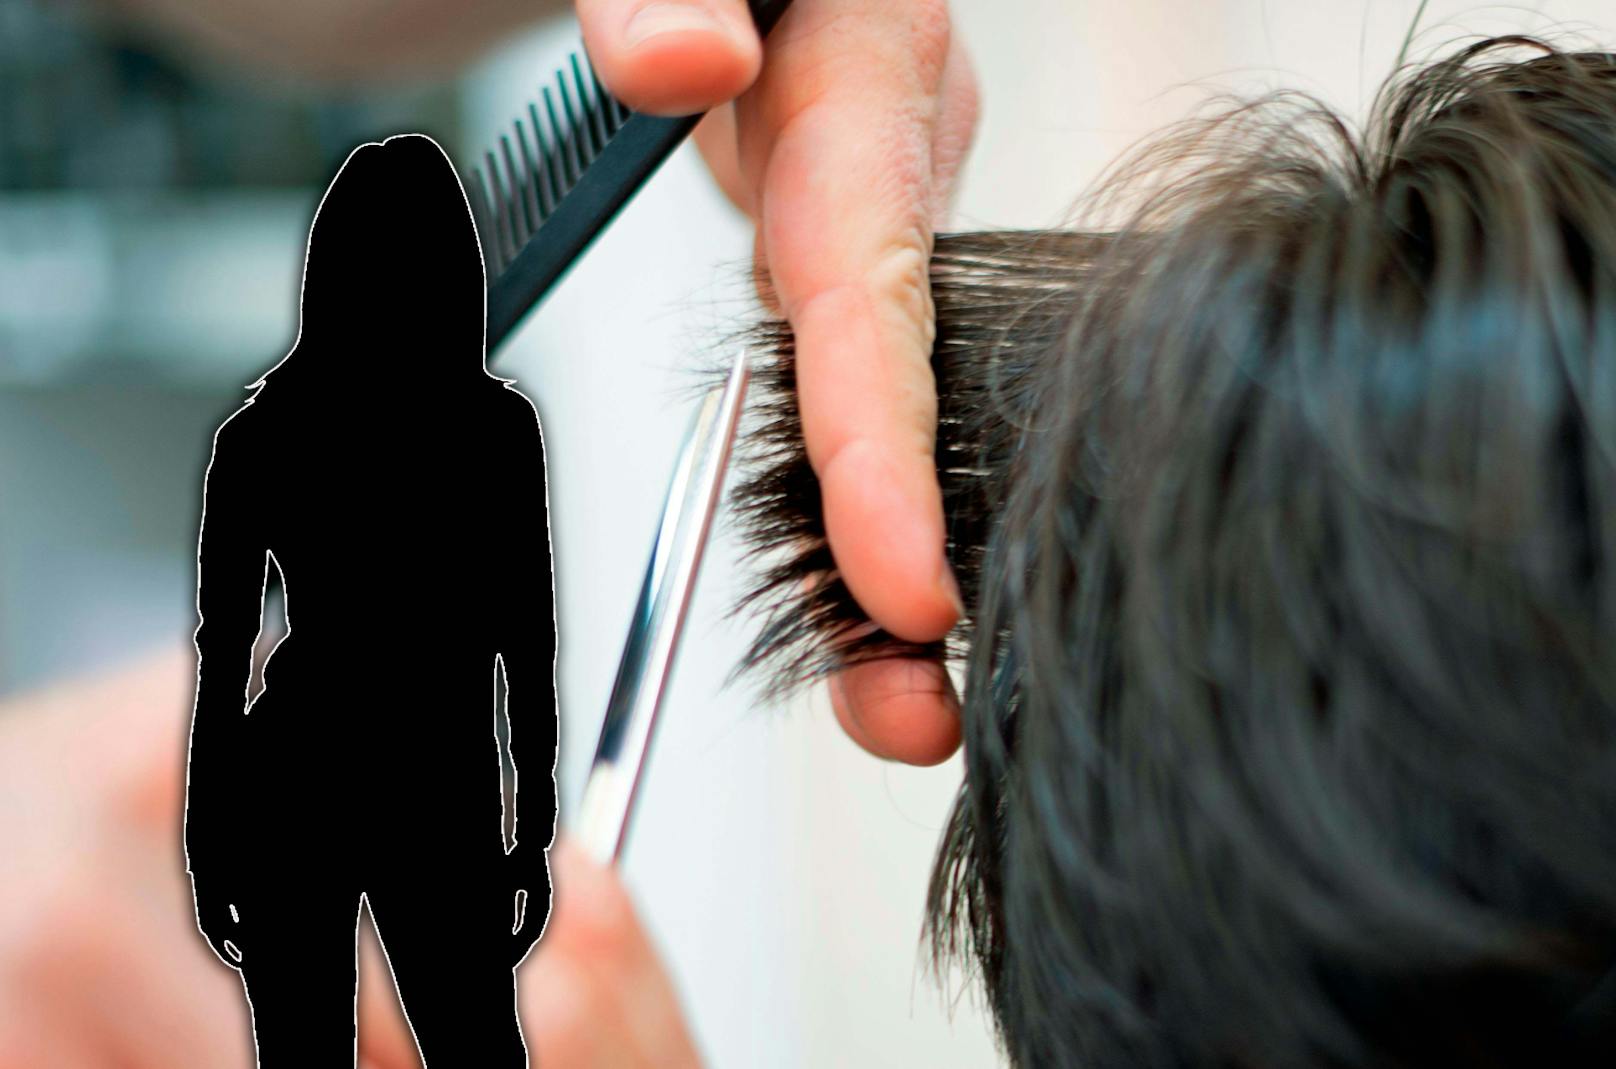 Eine ungeimpfte Wienerin berichtet, dass sie seit 2019 nicht mehr beim Friseur war. "Mit Maske ist es für mich kein Vergnügen."